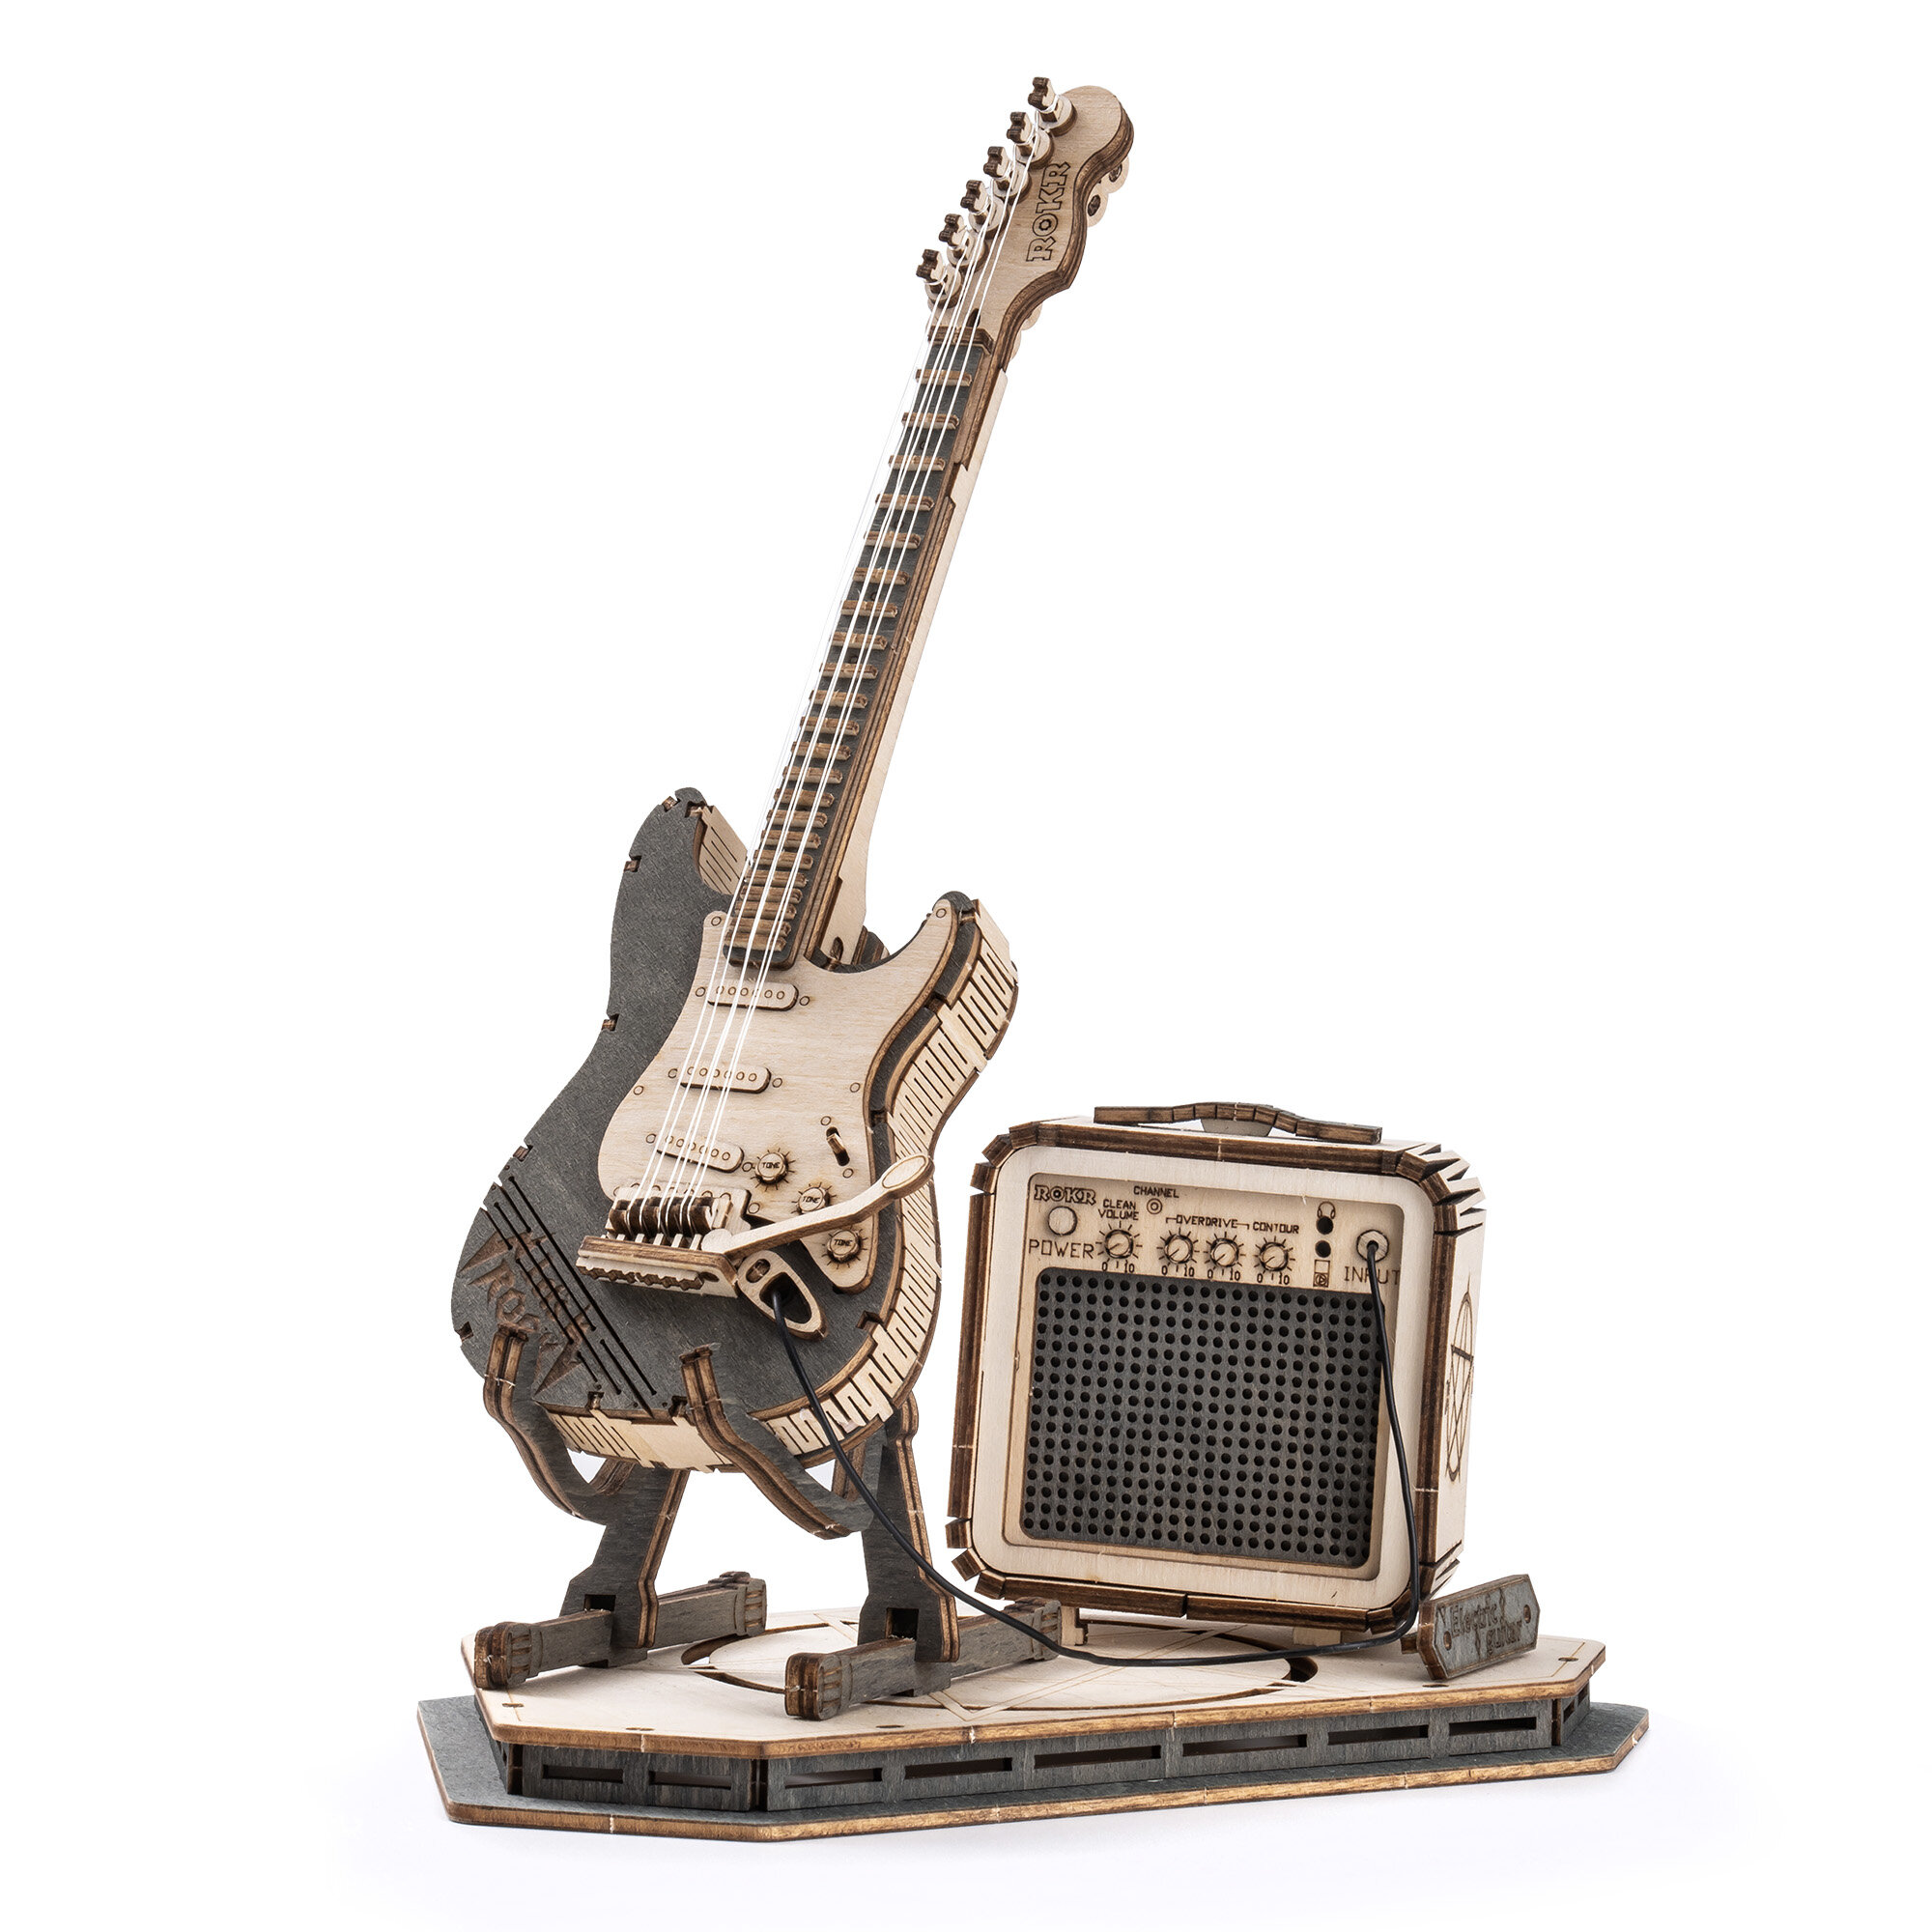 Ξύλινο τρισδιάστατο παζλ - Ηλεκτρική κιθάρα μοντέλο ROKR TG605K